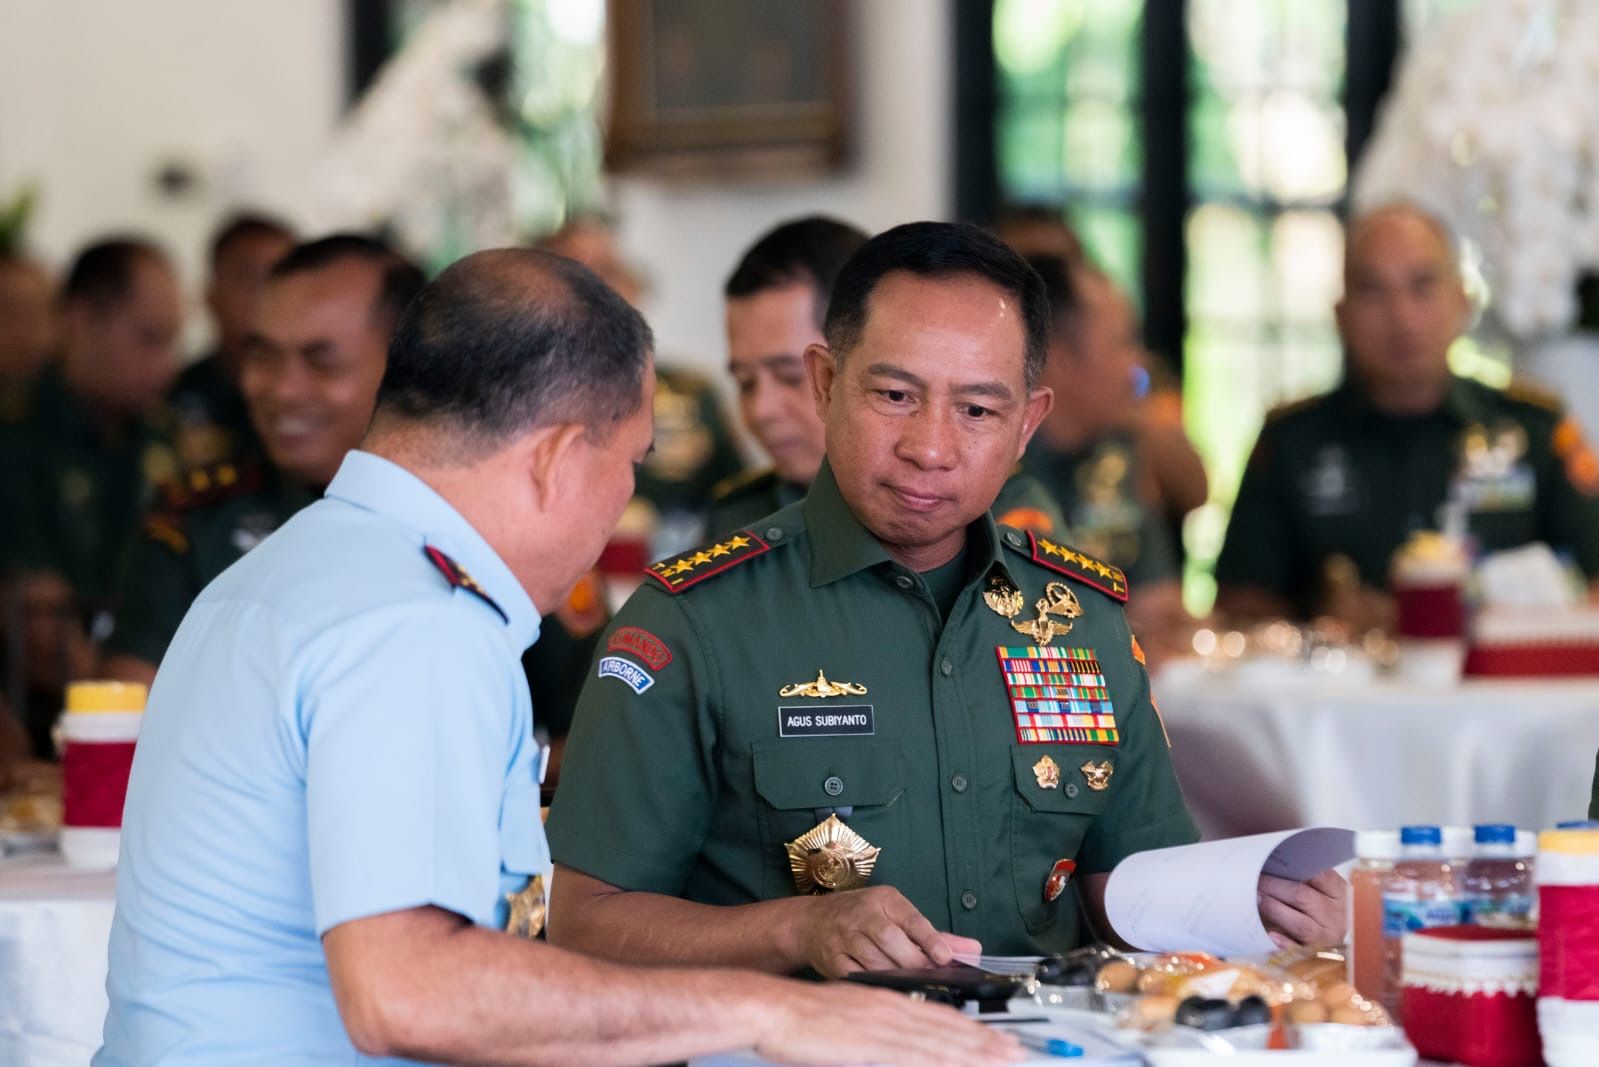 Panglima TNI Perintahkan Pengamanan Pilkada Harus Serius karena Ancaman dan Risiko Lebih Besar